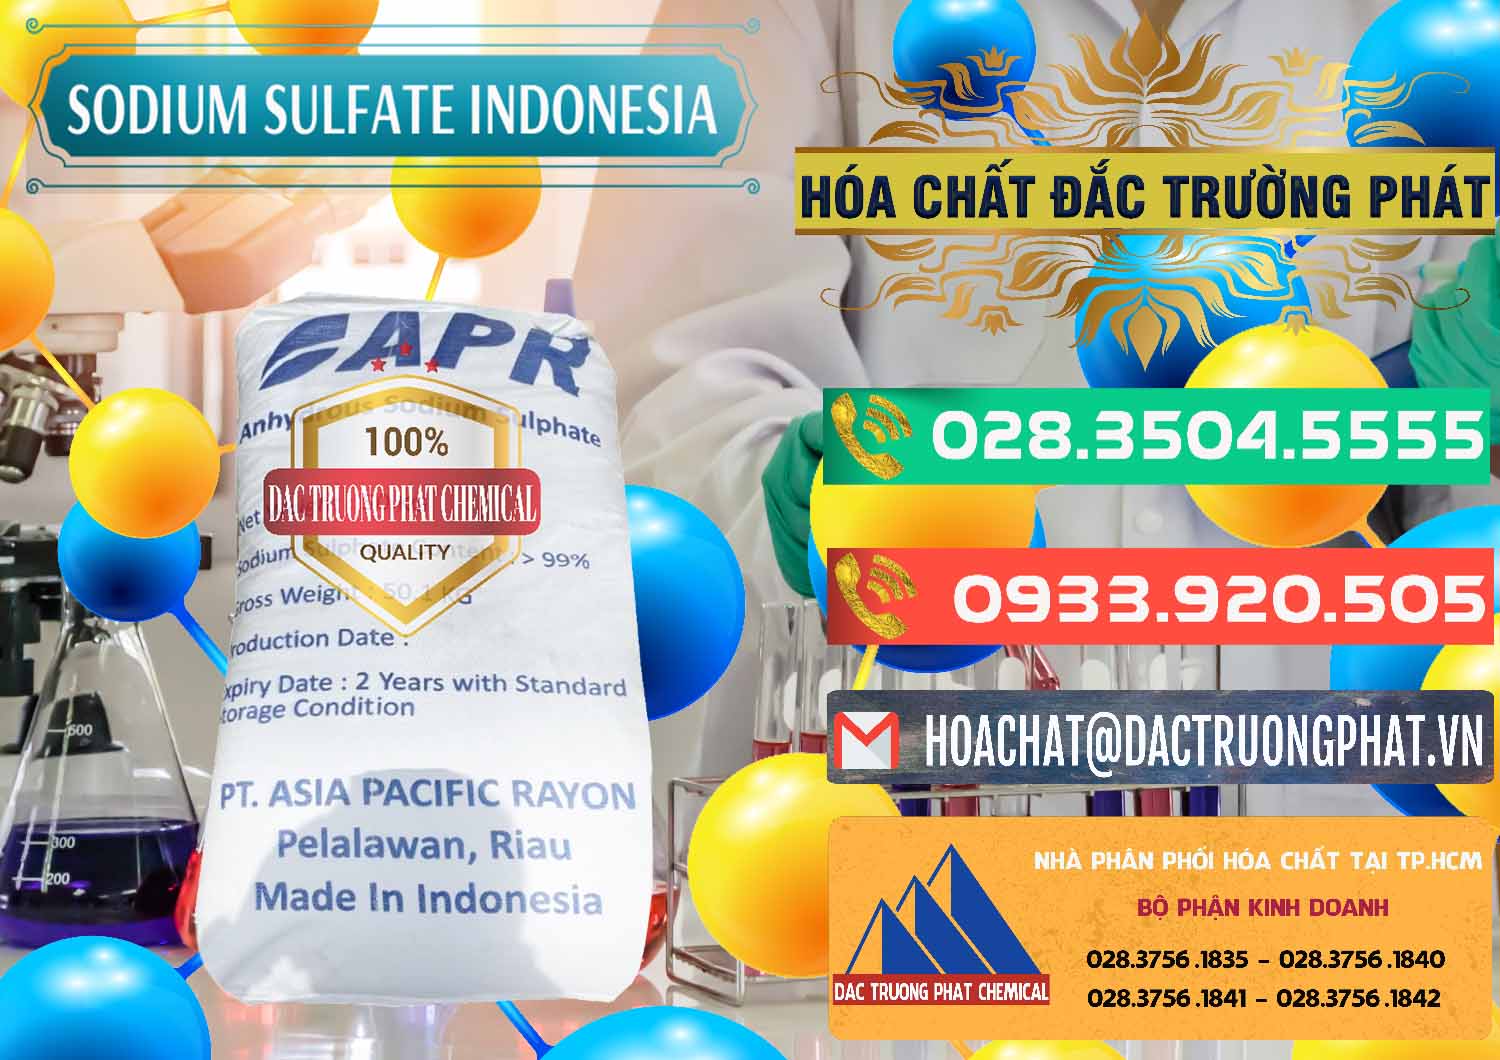 Chuyên bán - cung cấp Sodium Sulphate - Muối Sunfat Na2SO4 APR Indonesia - 0460 - Công ty chuyên kinh doanh - phân phối hóa chất tại TP.HCM - congtyhoachat.com.vn